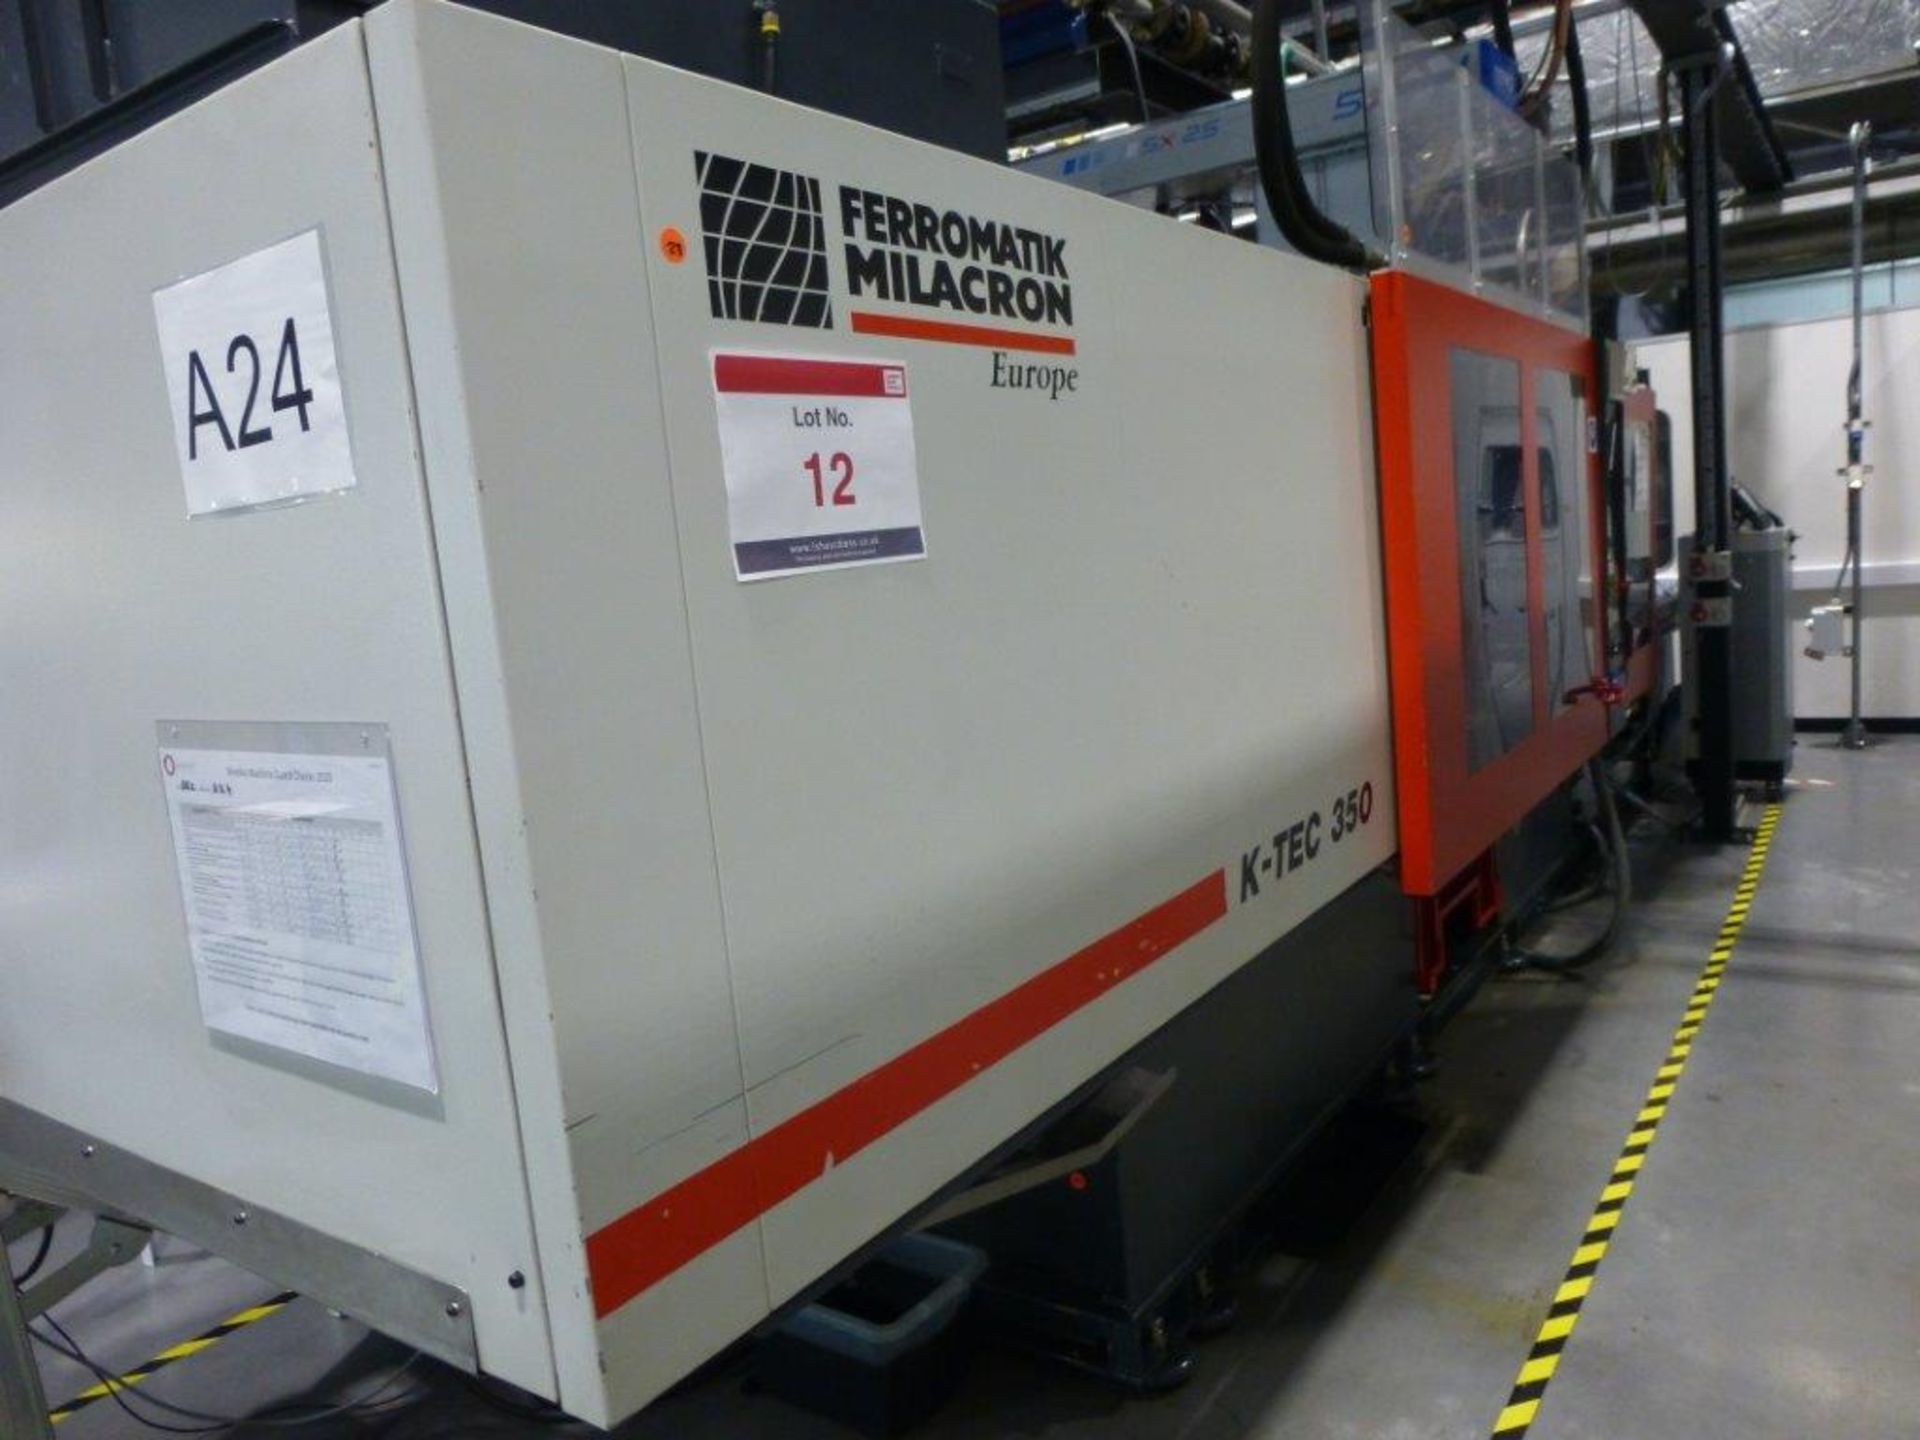 Ferromatik Milacron K-Tec 350S CNC Plastic Injection Moulding Machine Serial No 565230 (2002) with